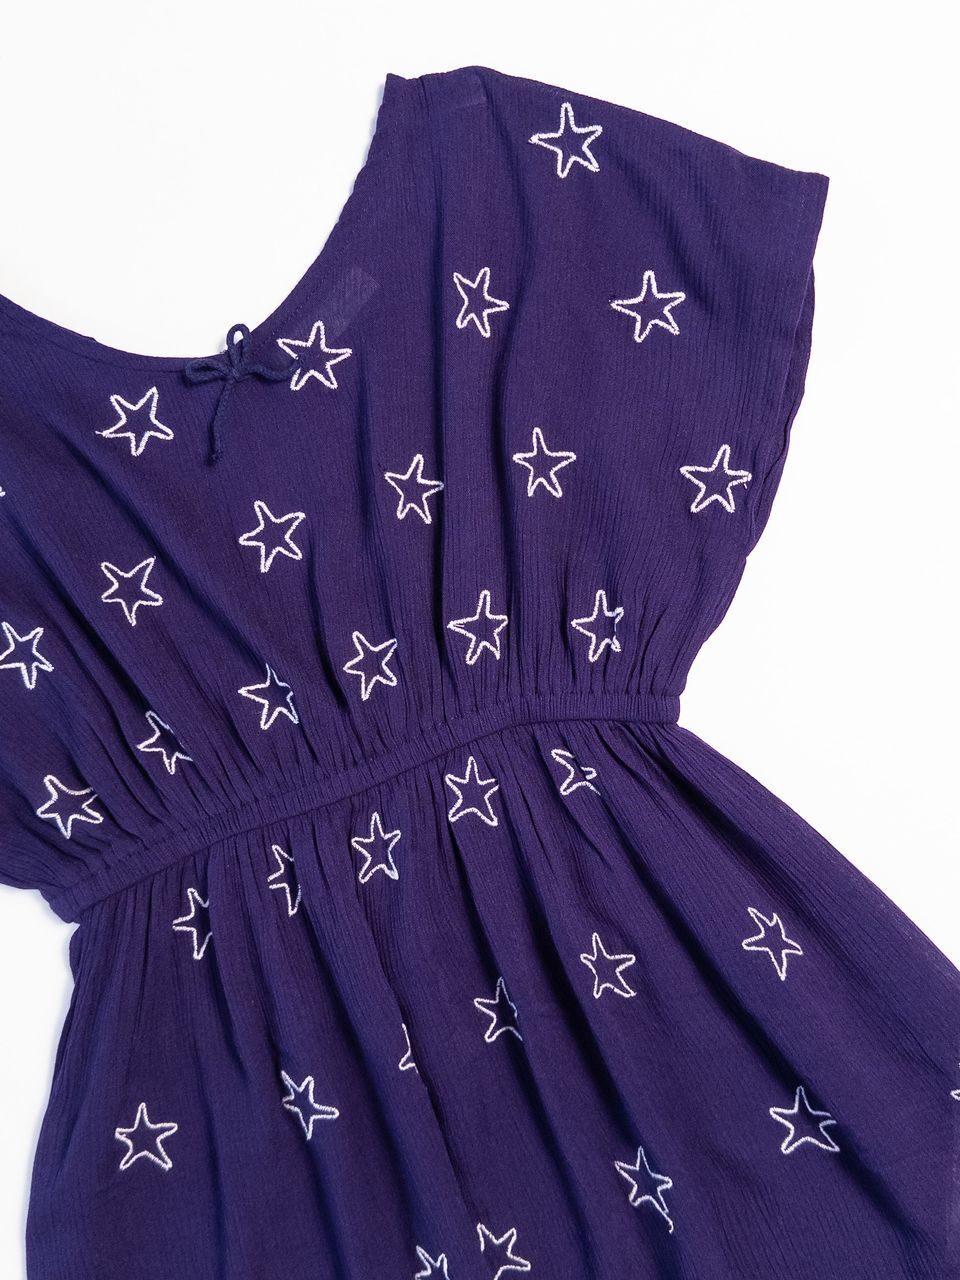 Платье-туника в поясе резинка цвет фиолетовый принт Звезды на рост 116 см 5-6 лет Primark